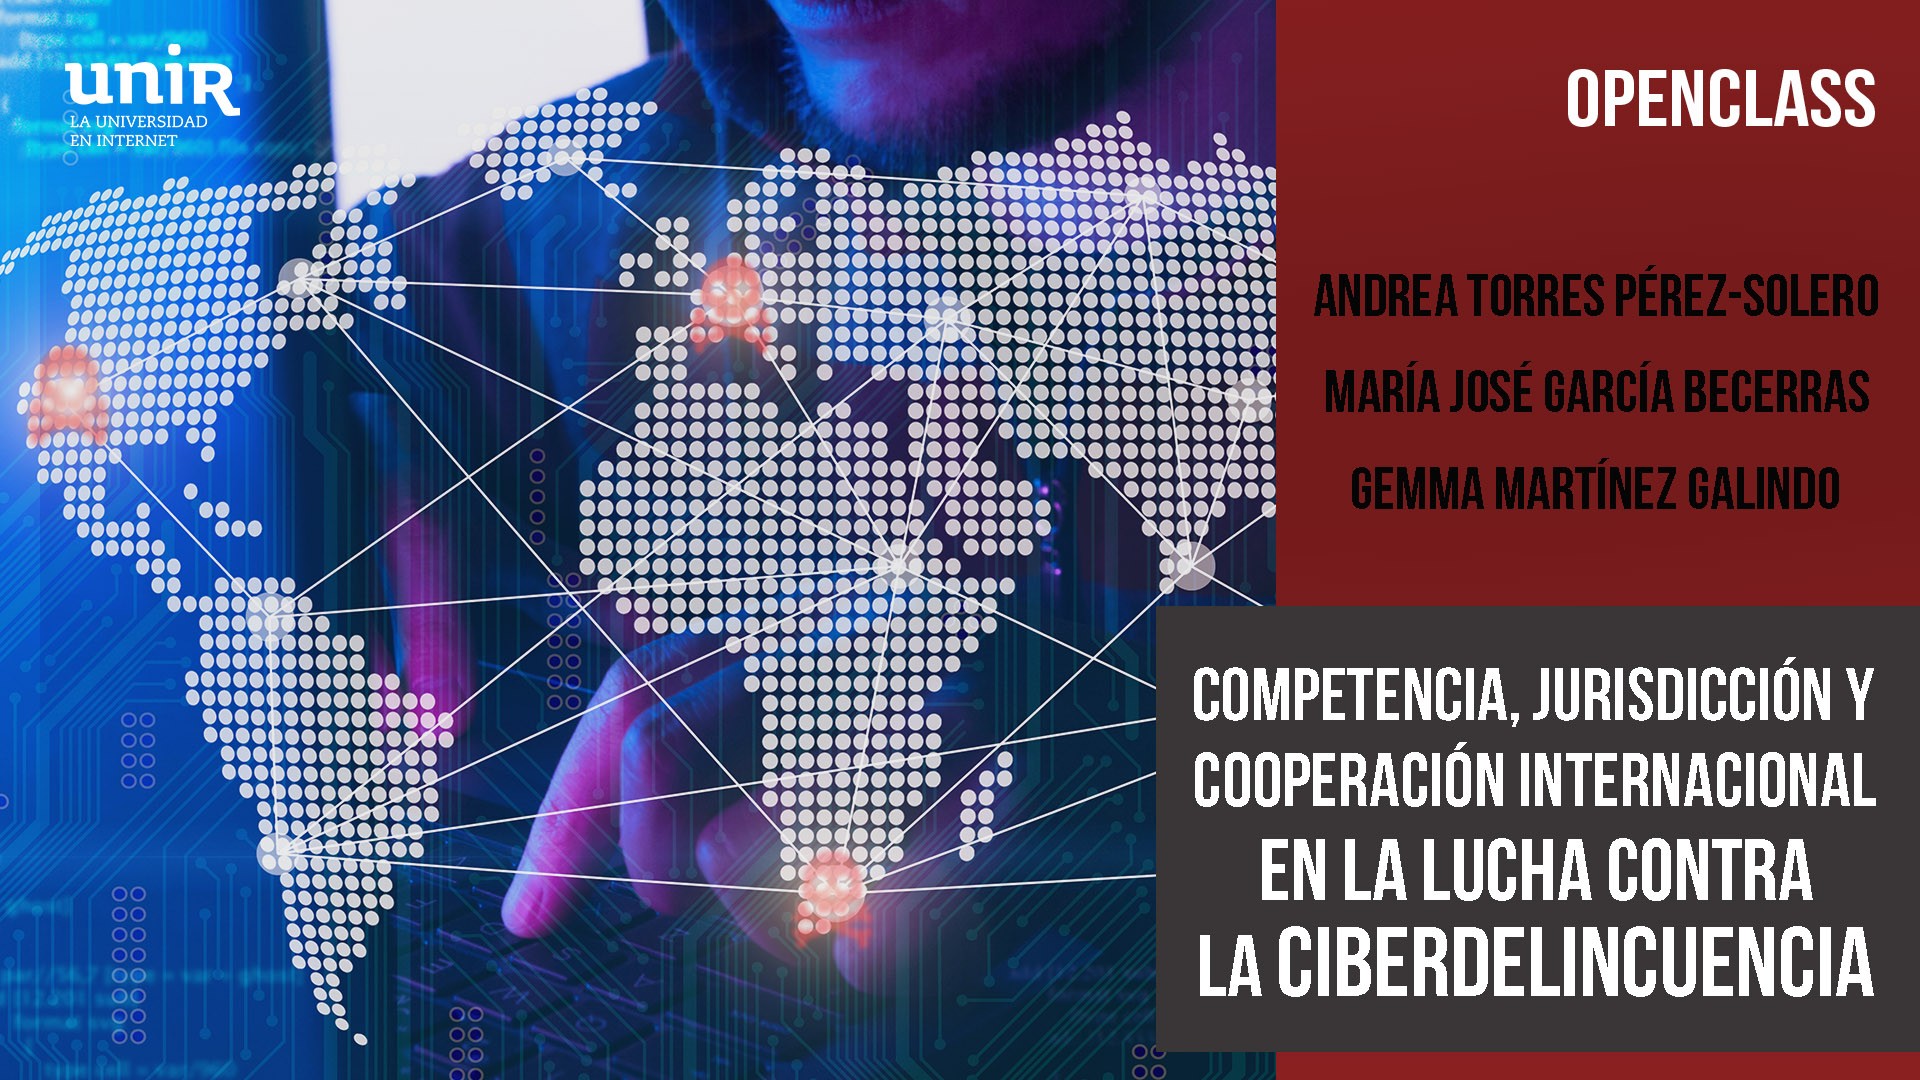 Competencia, Jurisdicción y Cooperación Internacional en la lucha contra la Ciberdelincuencia